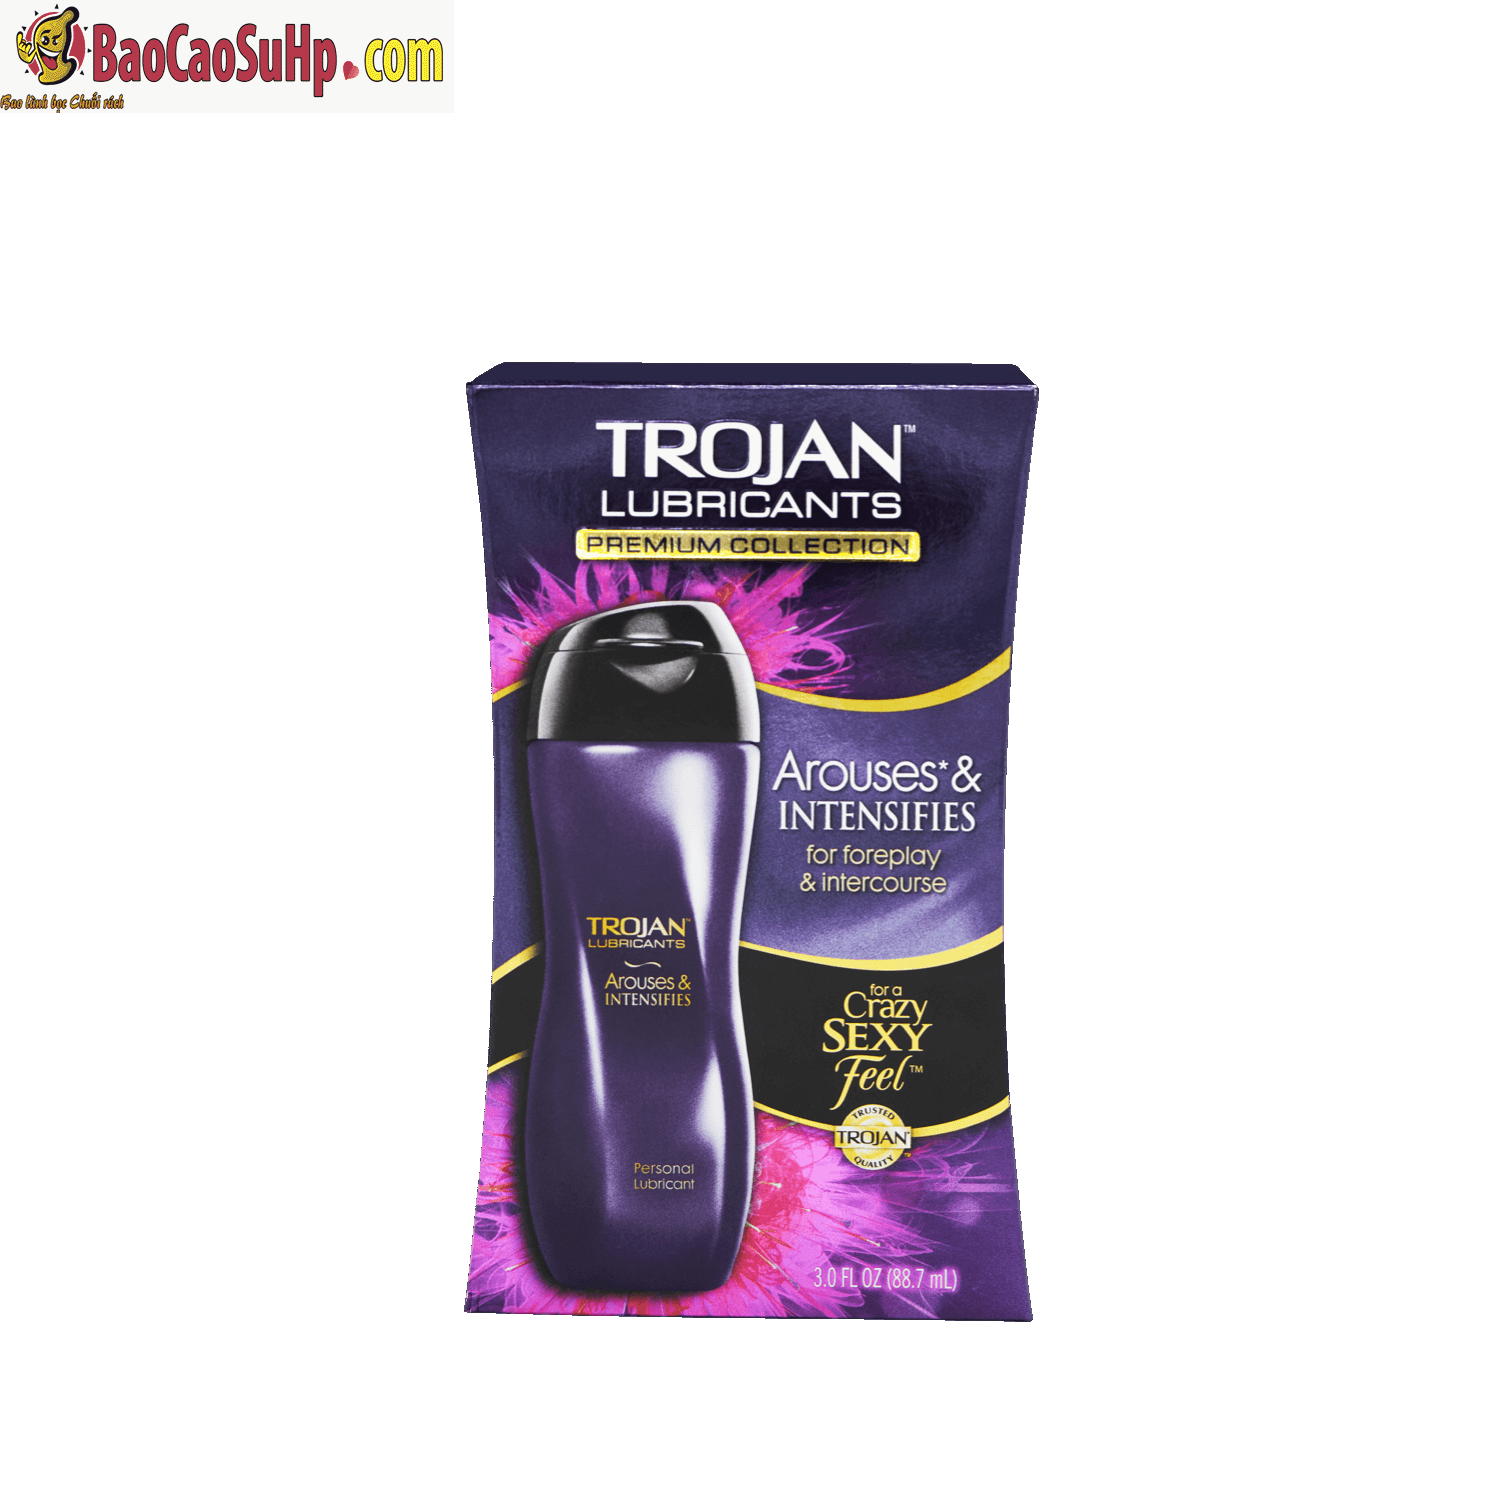 gel boi tron Trojan USA 1 - Lịch sử hình thành và phát triển hãng bao cao su Trojan thương hiệu số 1 tại Mỹ hiện nay!